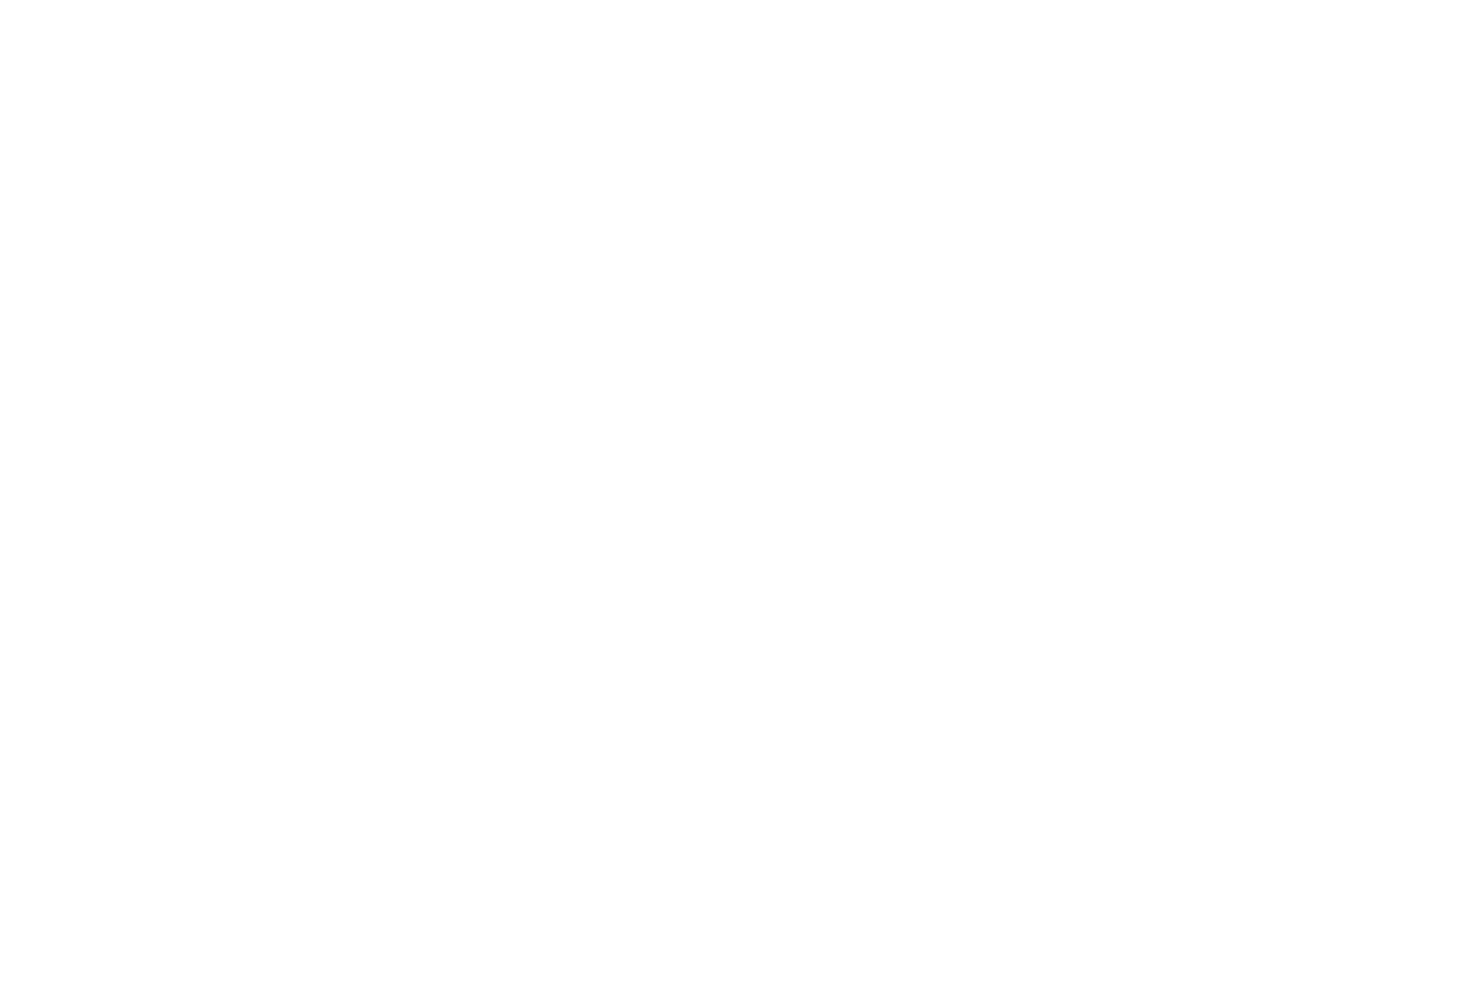 Лот №16: Картина с автографом Дианы Арбениной. Холст хлопок, акриловые краски, размер 100х80 см, 2019 г. (авторы: Диана Арбенина, Вадим Котляр и Ваня Руппель). Начальная цена: 25 000 руб.